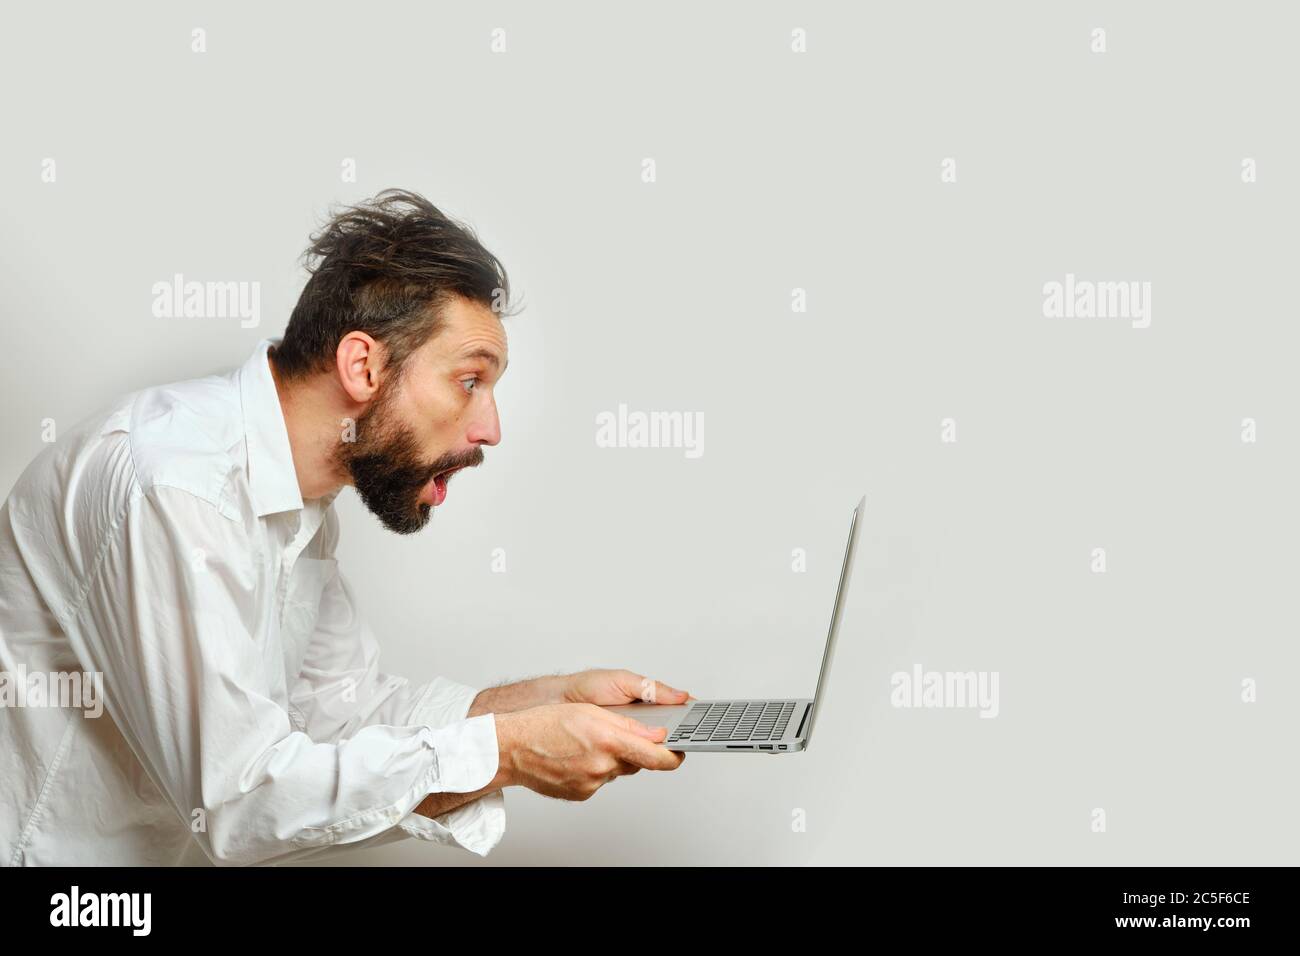 Der junge Kaukasusmann sieht überrascht einen Laptop-Monitor auf weißem Hintergrund isoliert. Menschliche Emotionen, Gesichtsausdruck Konzept Stockfoto